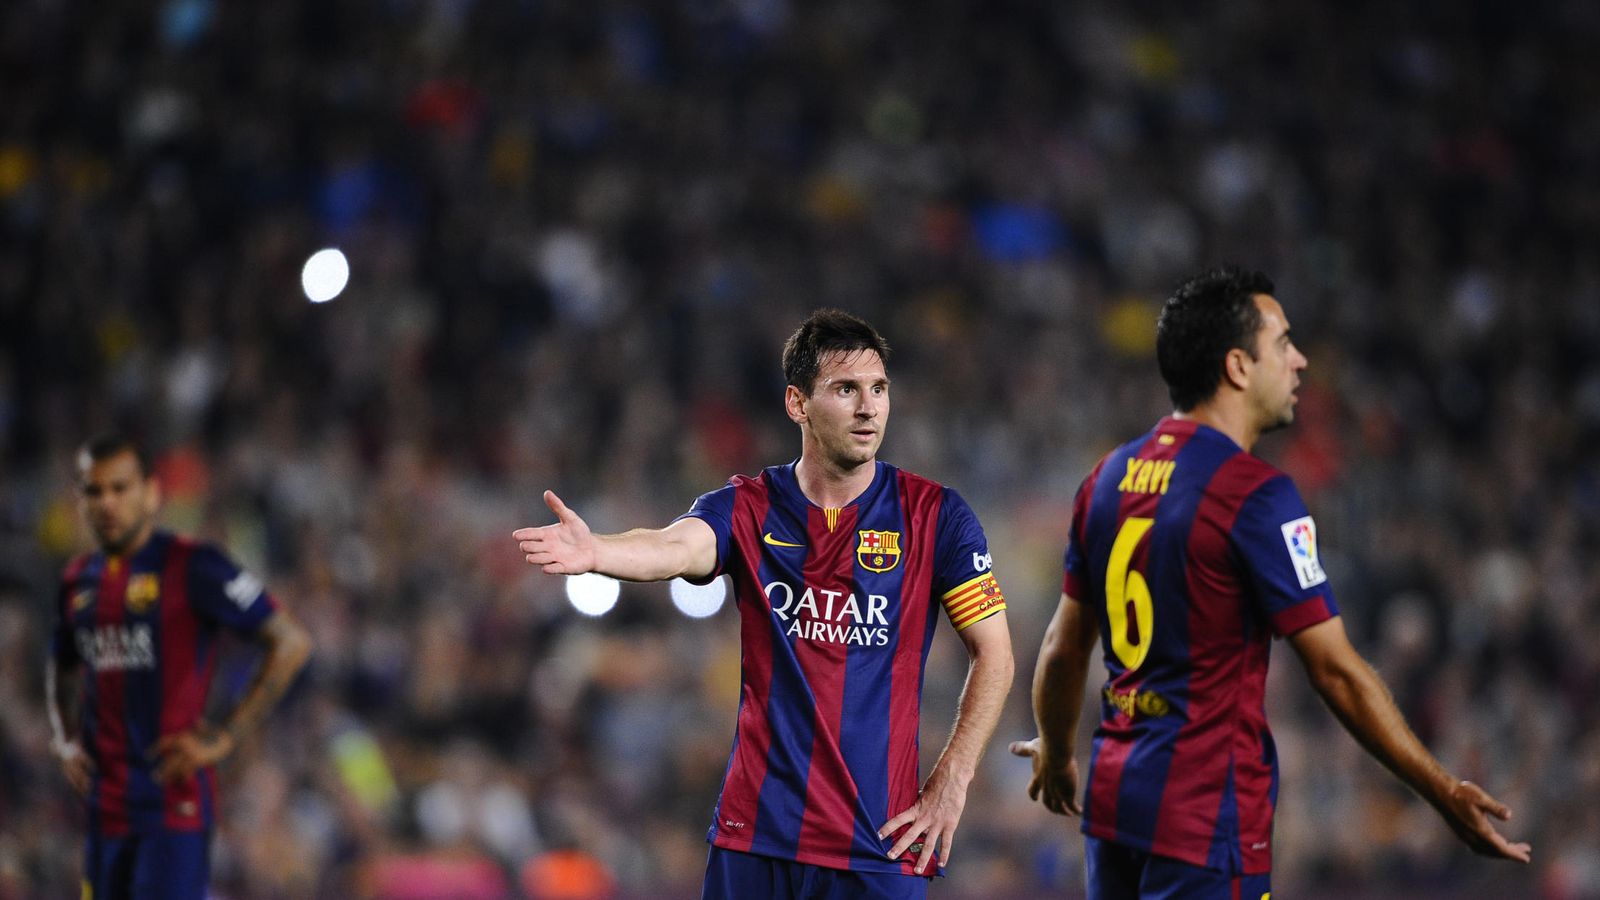 Foto: Alves, Messi y Xavi durante un partido (AP)